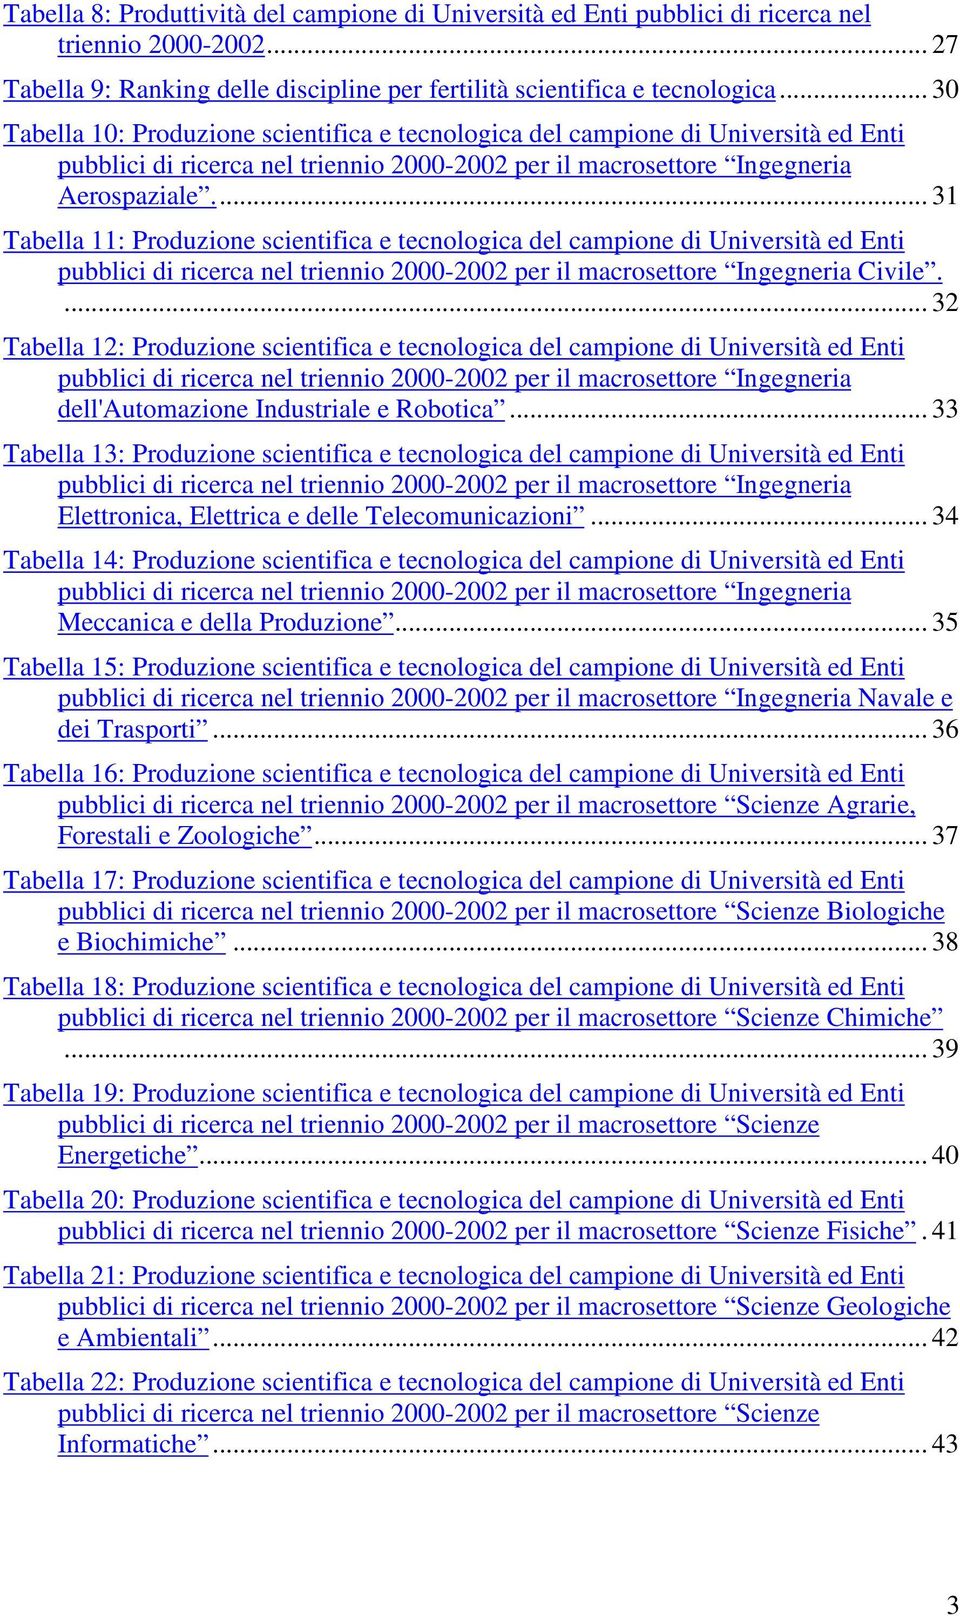 .. 31 Tabella 11: Produzione scientifica e tecnologica del campione di Università ed Enti pubblici di ricerca nel triennio 2000-2002 per il macrosettore Ingegneria Civile.